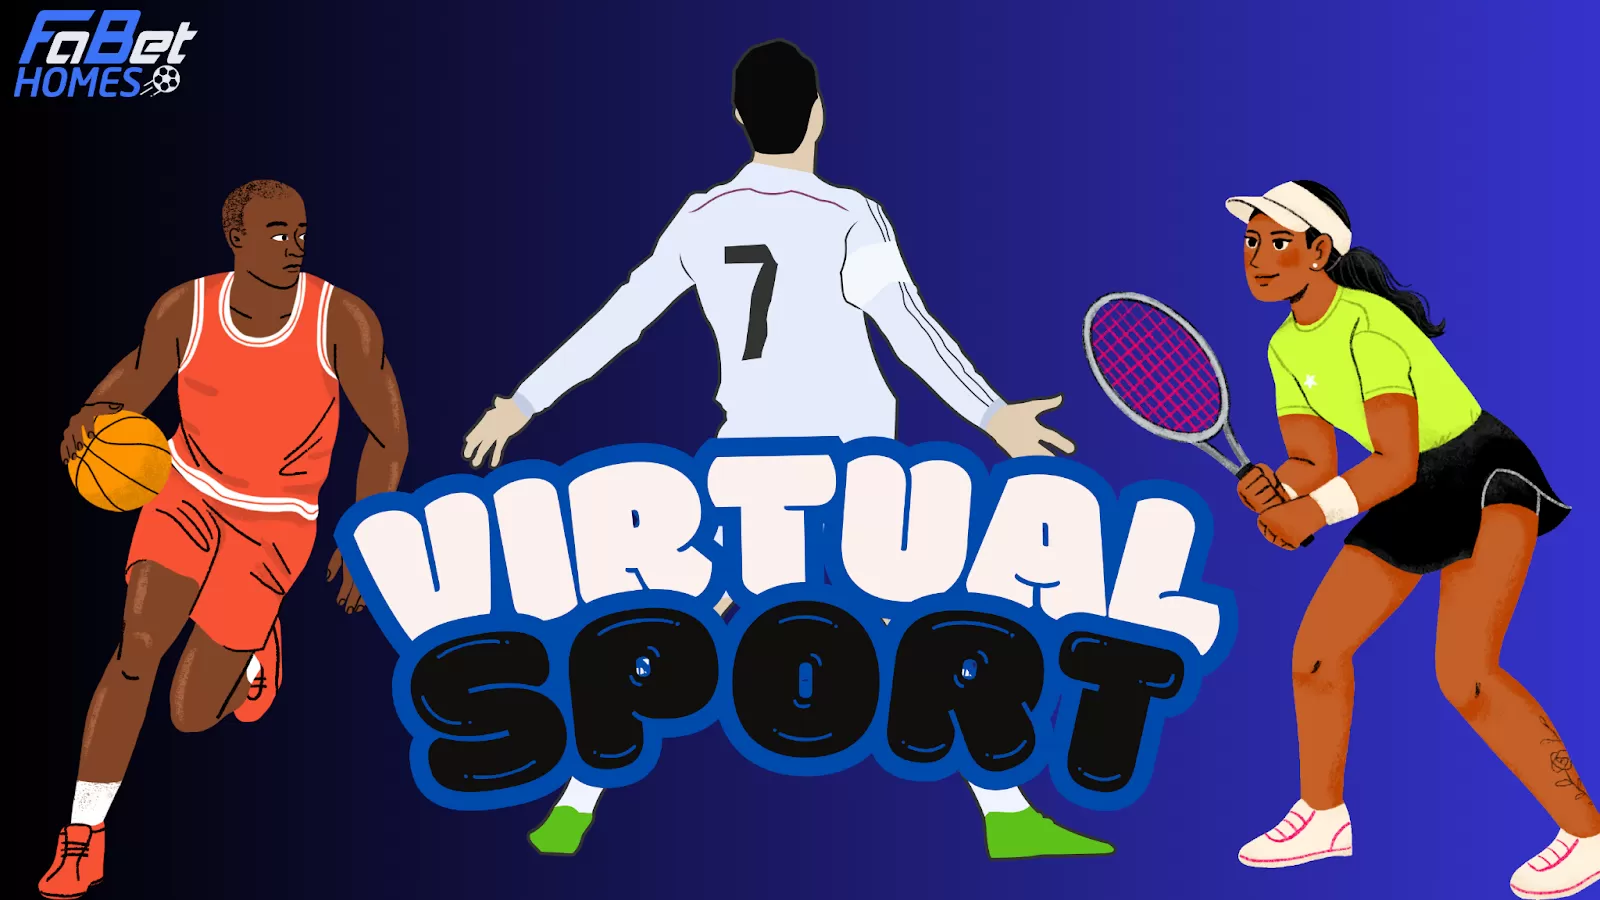 Trải nghiệm cá cược Virtual sports trên nhà cái Fabet